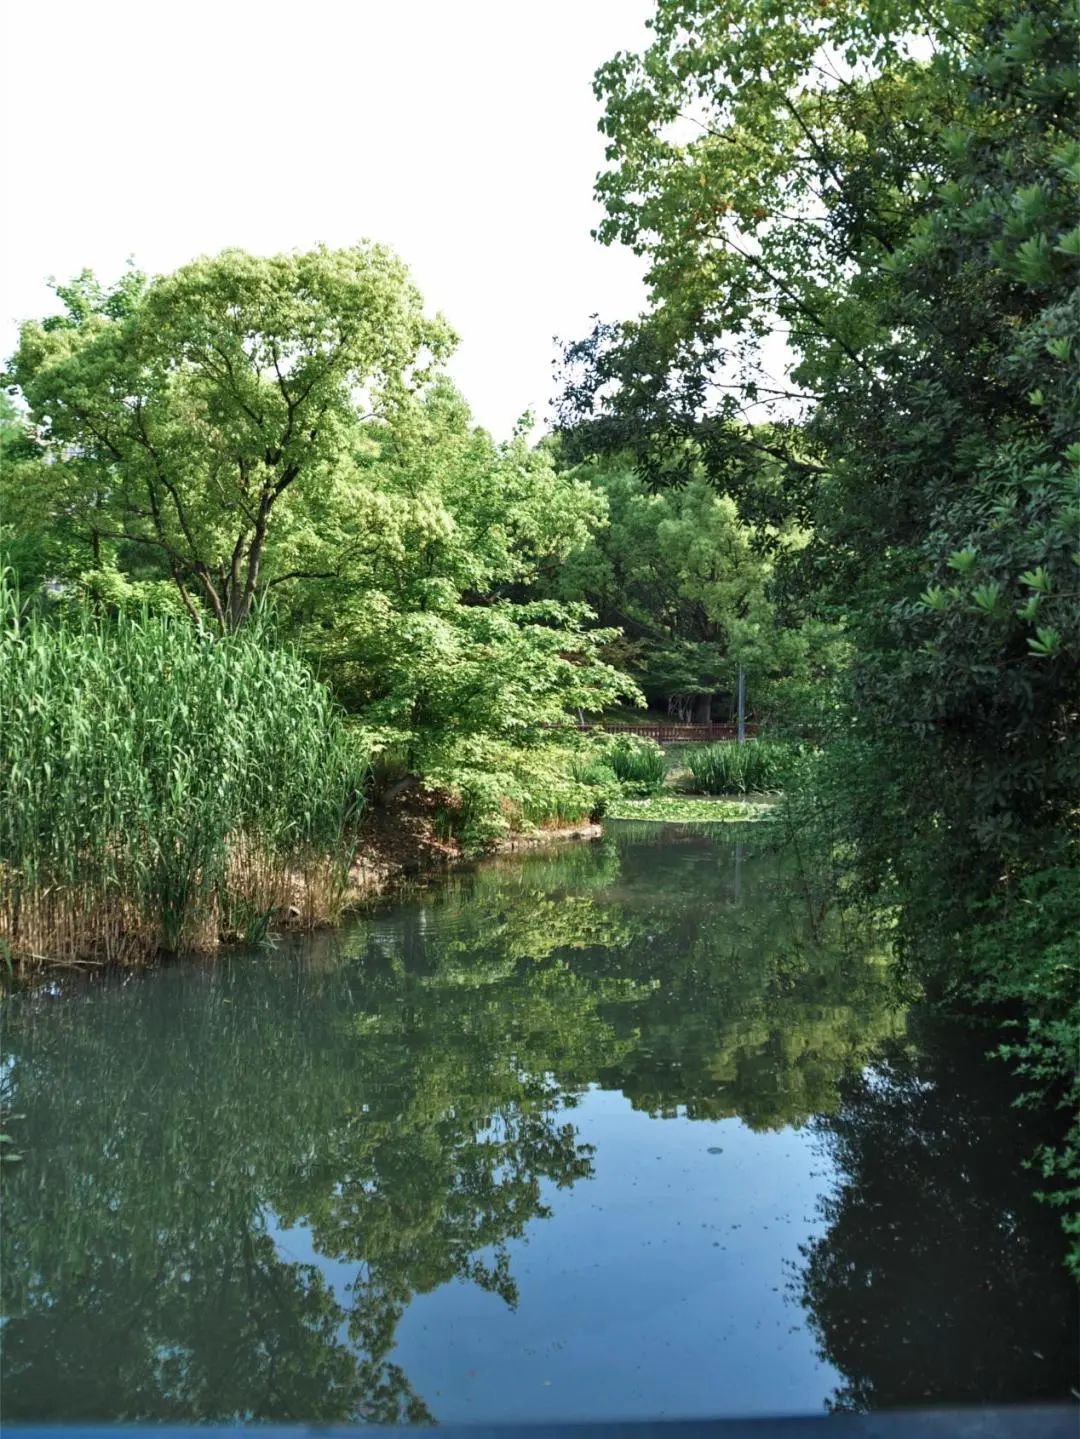 南箐园,上海青浦新城最具特色的城市森林湿地公园